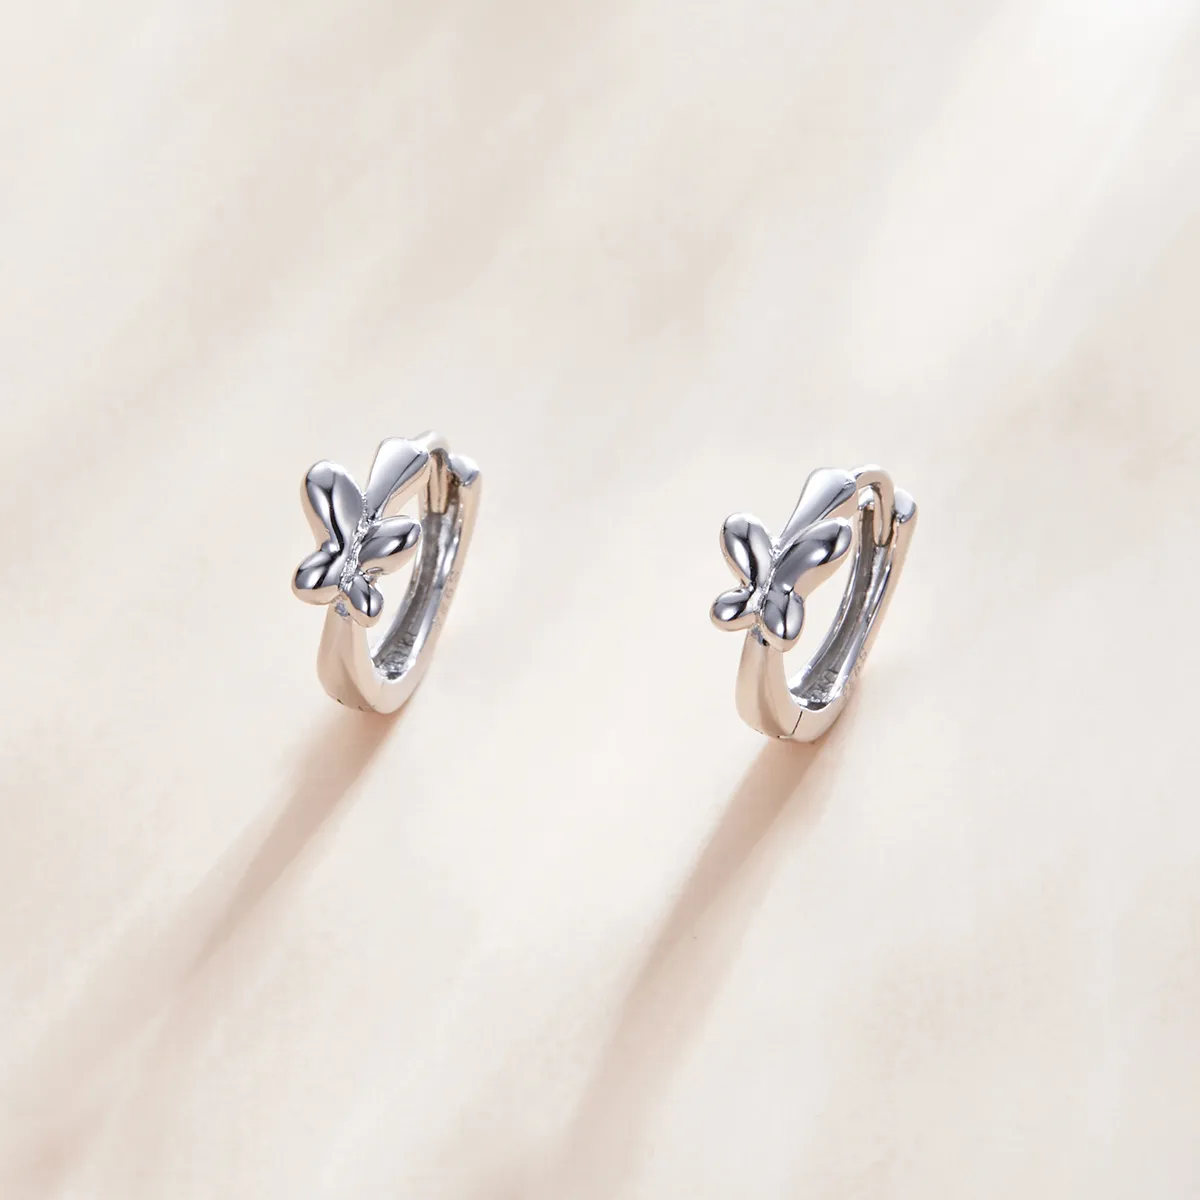 Pandora Style Silver Butterfly Hoop Earrings - SCE1038